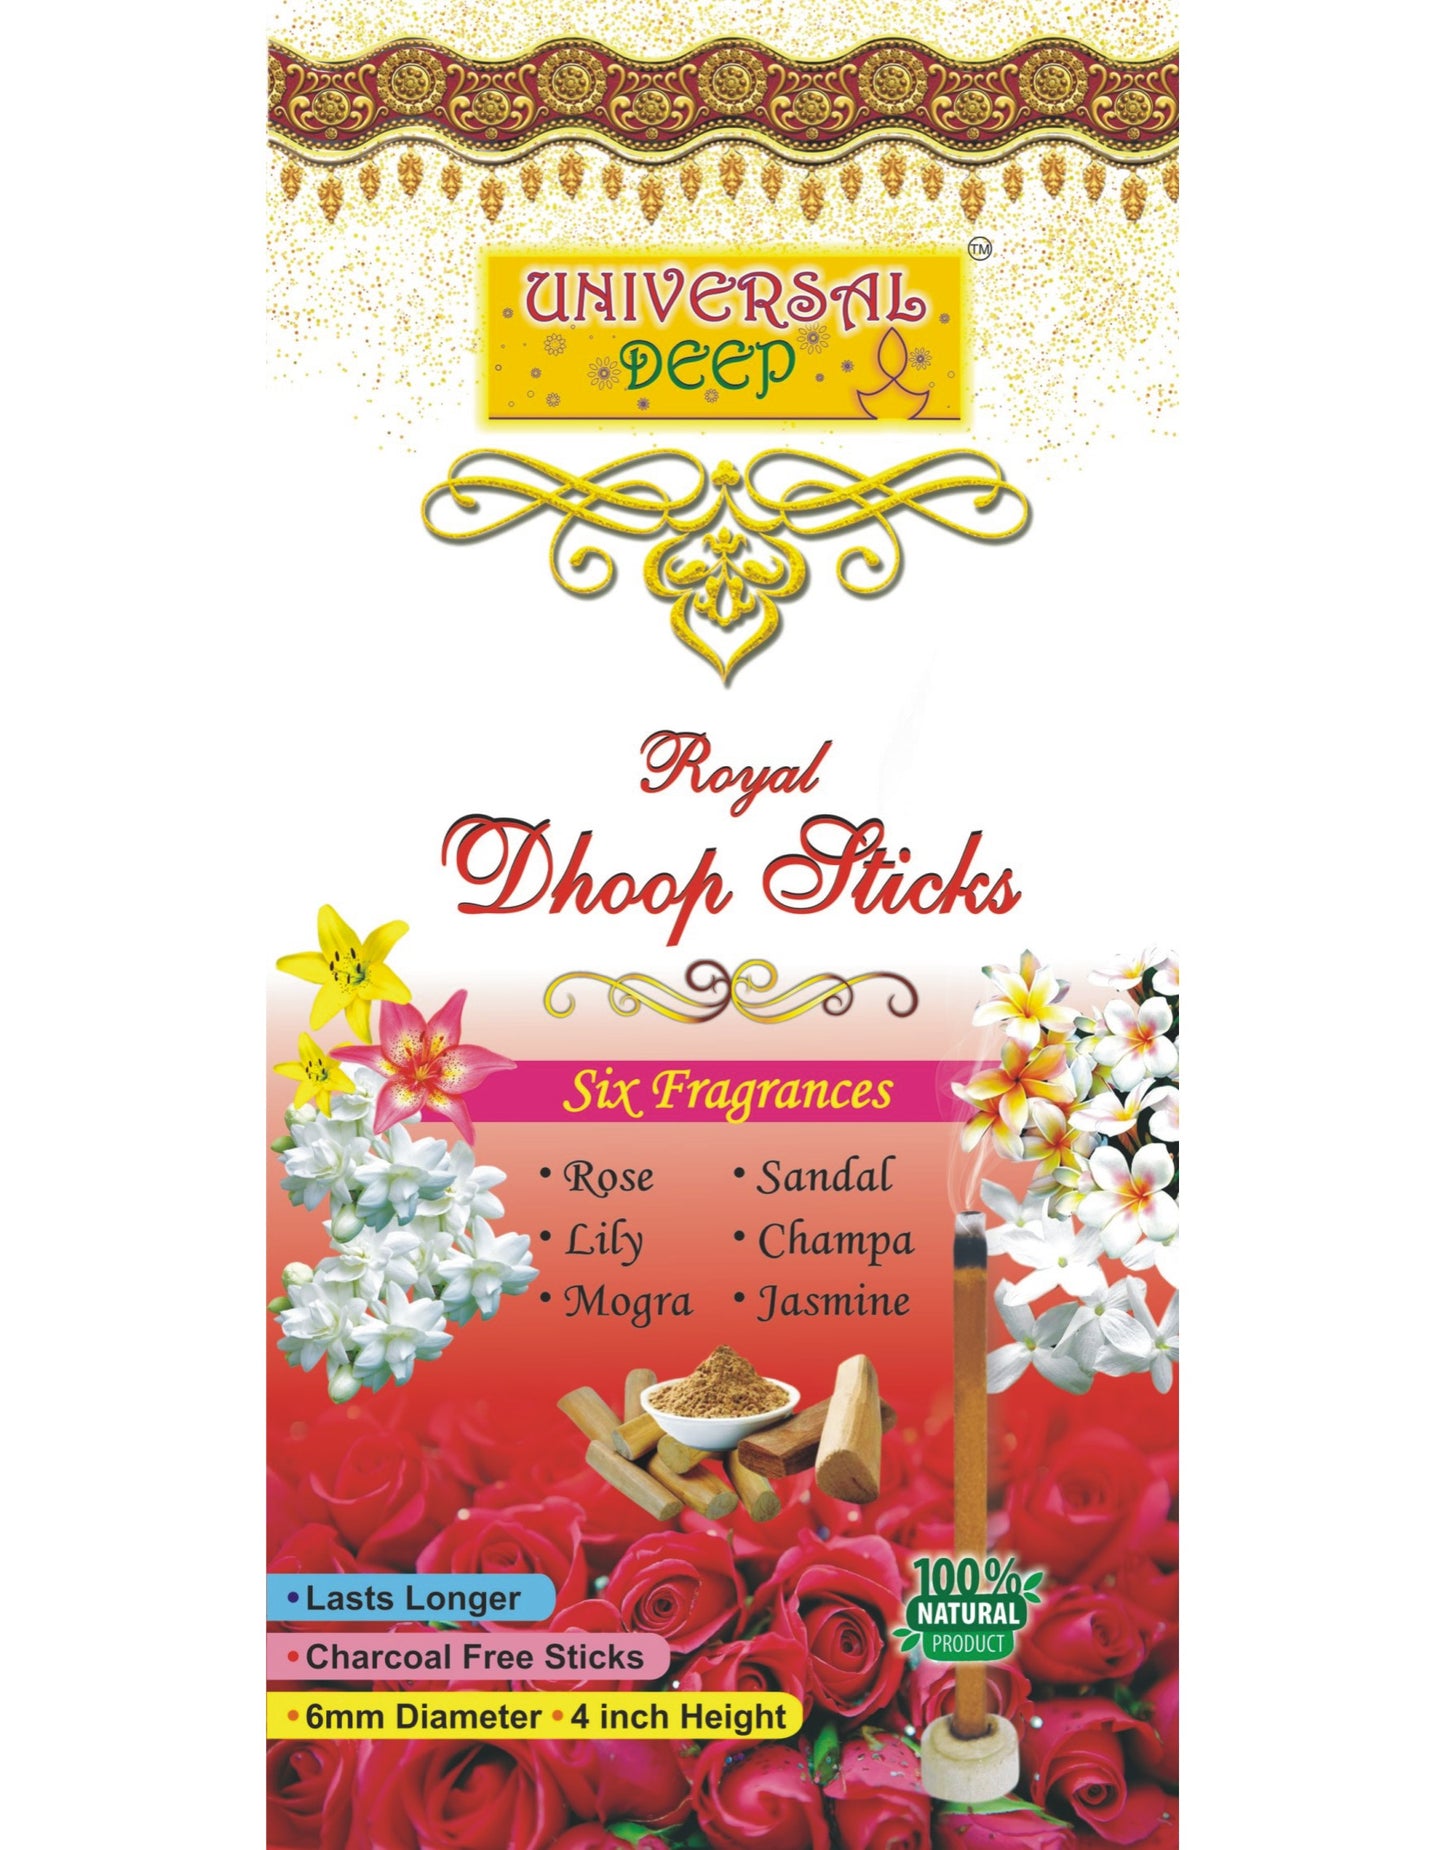 Pack de parfums Universal Deep Dhoop Sticks 6 en 1 (lot de 12 boîtes de 20 bâtons chacune, 2 boîtes chacune pour les 6 parfums-Sandal, Rose, Lily, Mogra, Jasmine, Champa)